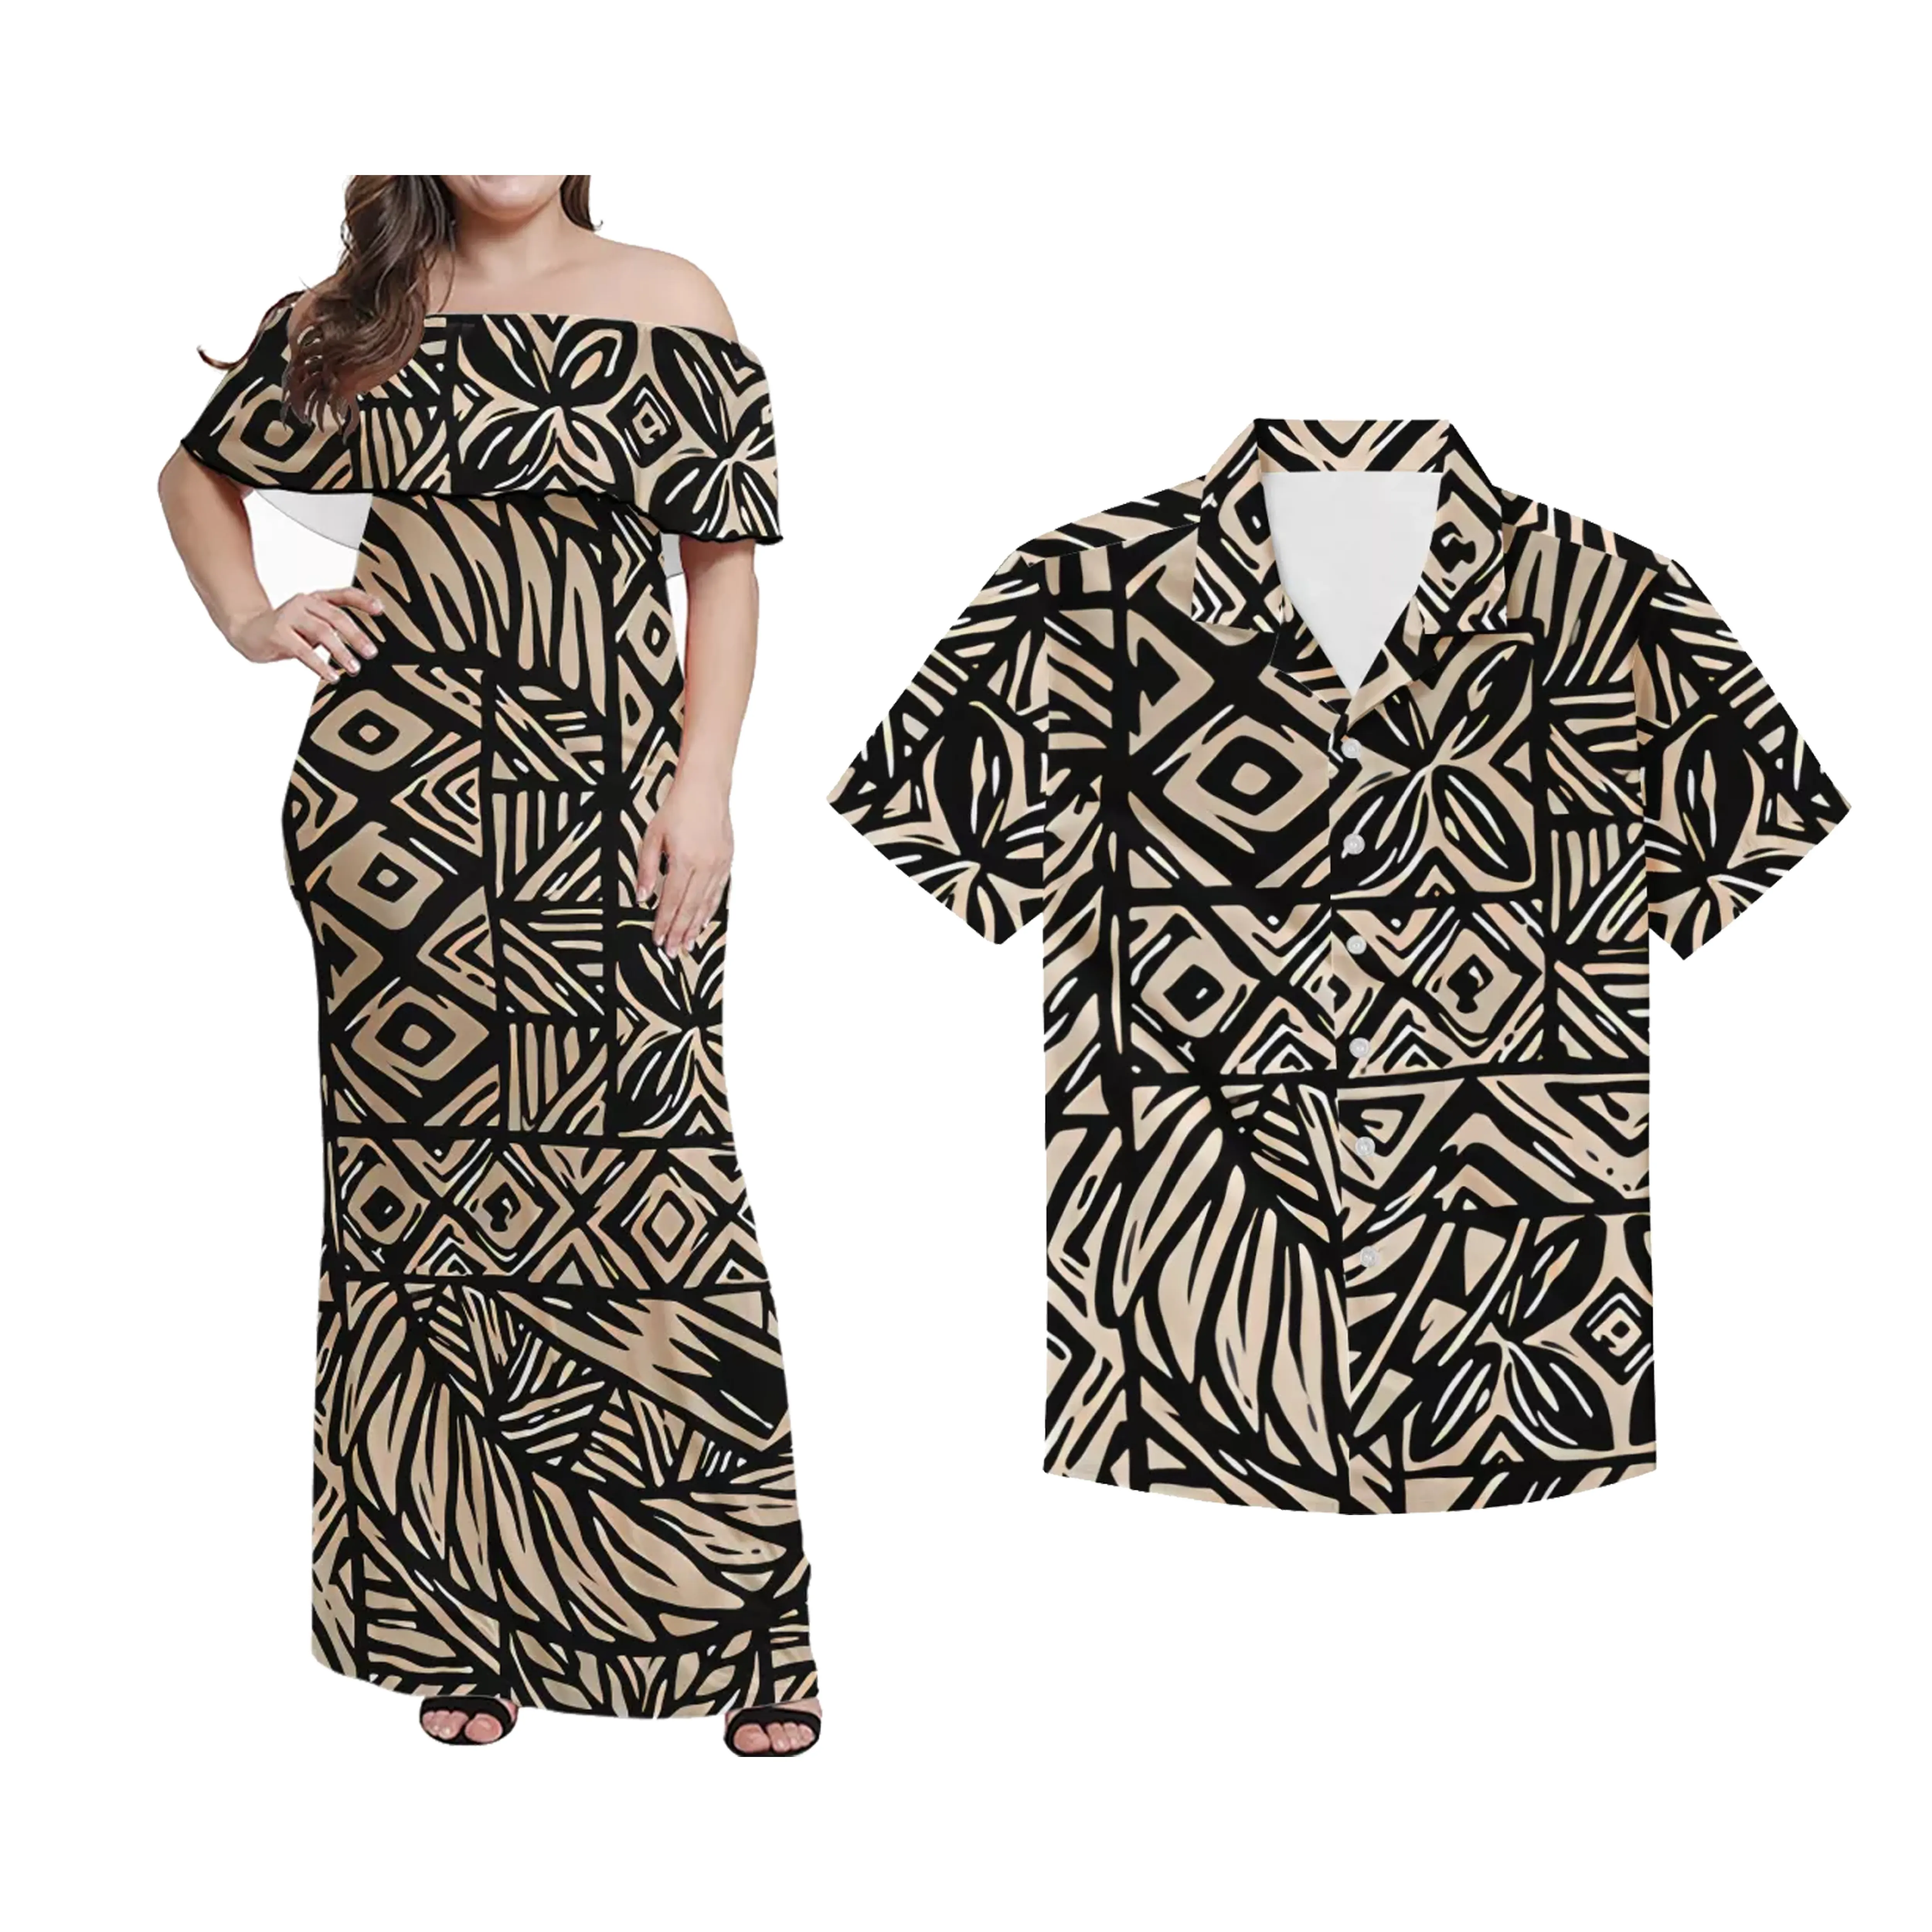 Moda yeni etnik desen giyim özel polinezya Tribal tasarım Puletasi giyim setleri rahat çiftler elbise ve gömlek